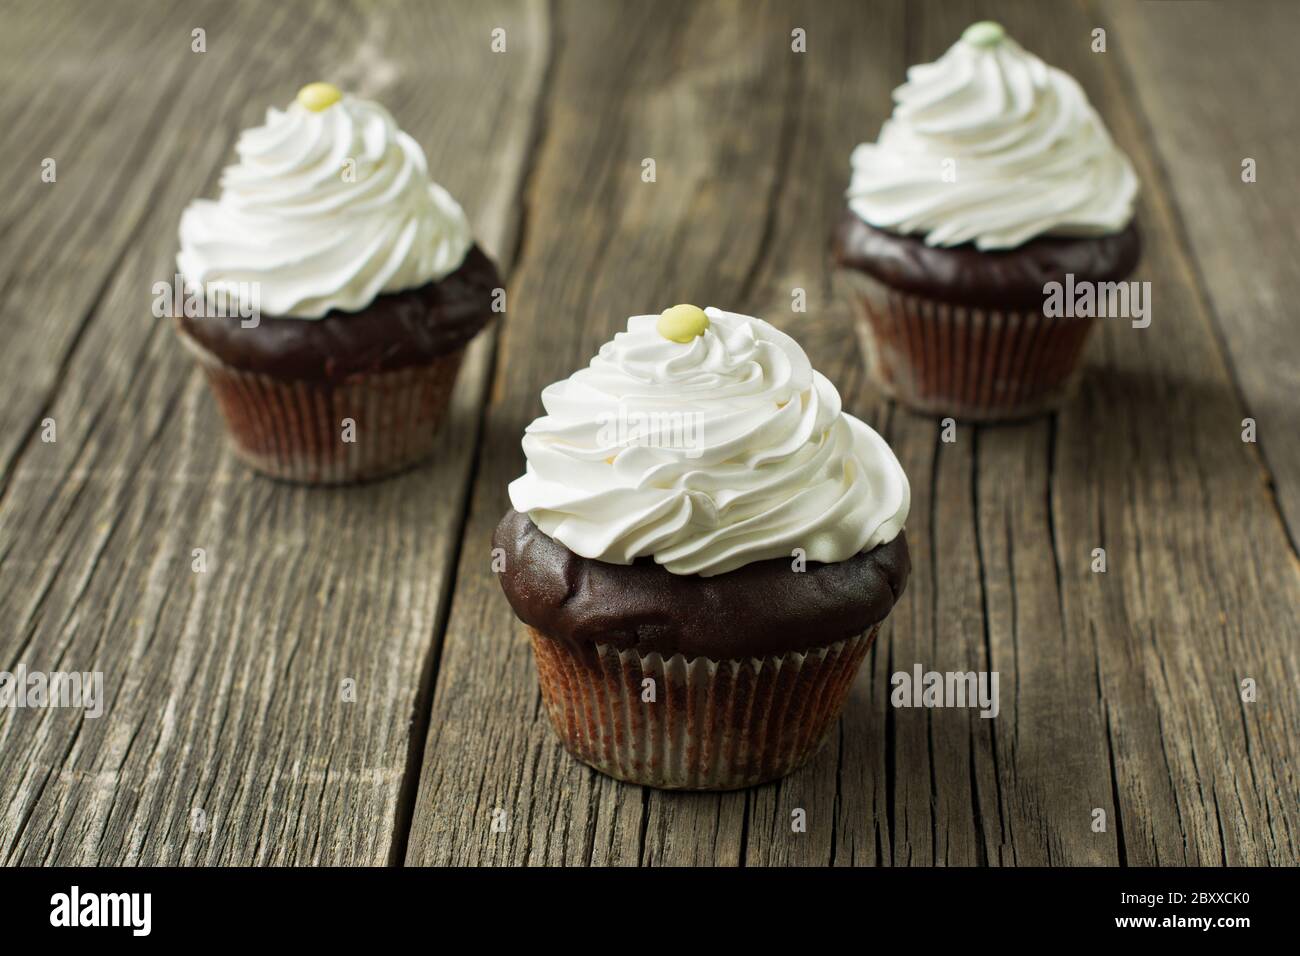 Hausgemachte Schokolade Cupcakes in Cupcake Liner, gekrönt mit Schlagsahne, verziert mit Knopf-förmigen Süßigkeiten, auf dem rustikalen Holzdiele Hintergrund. Stockfoto